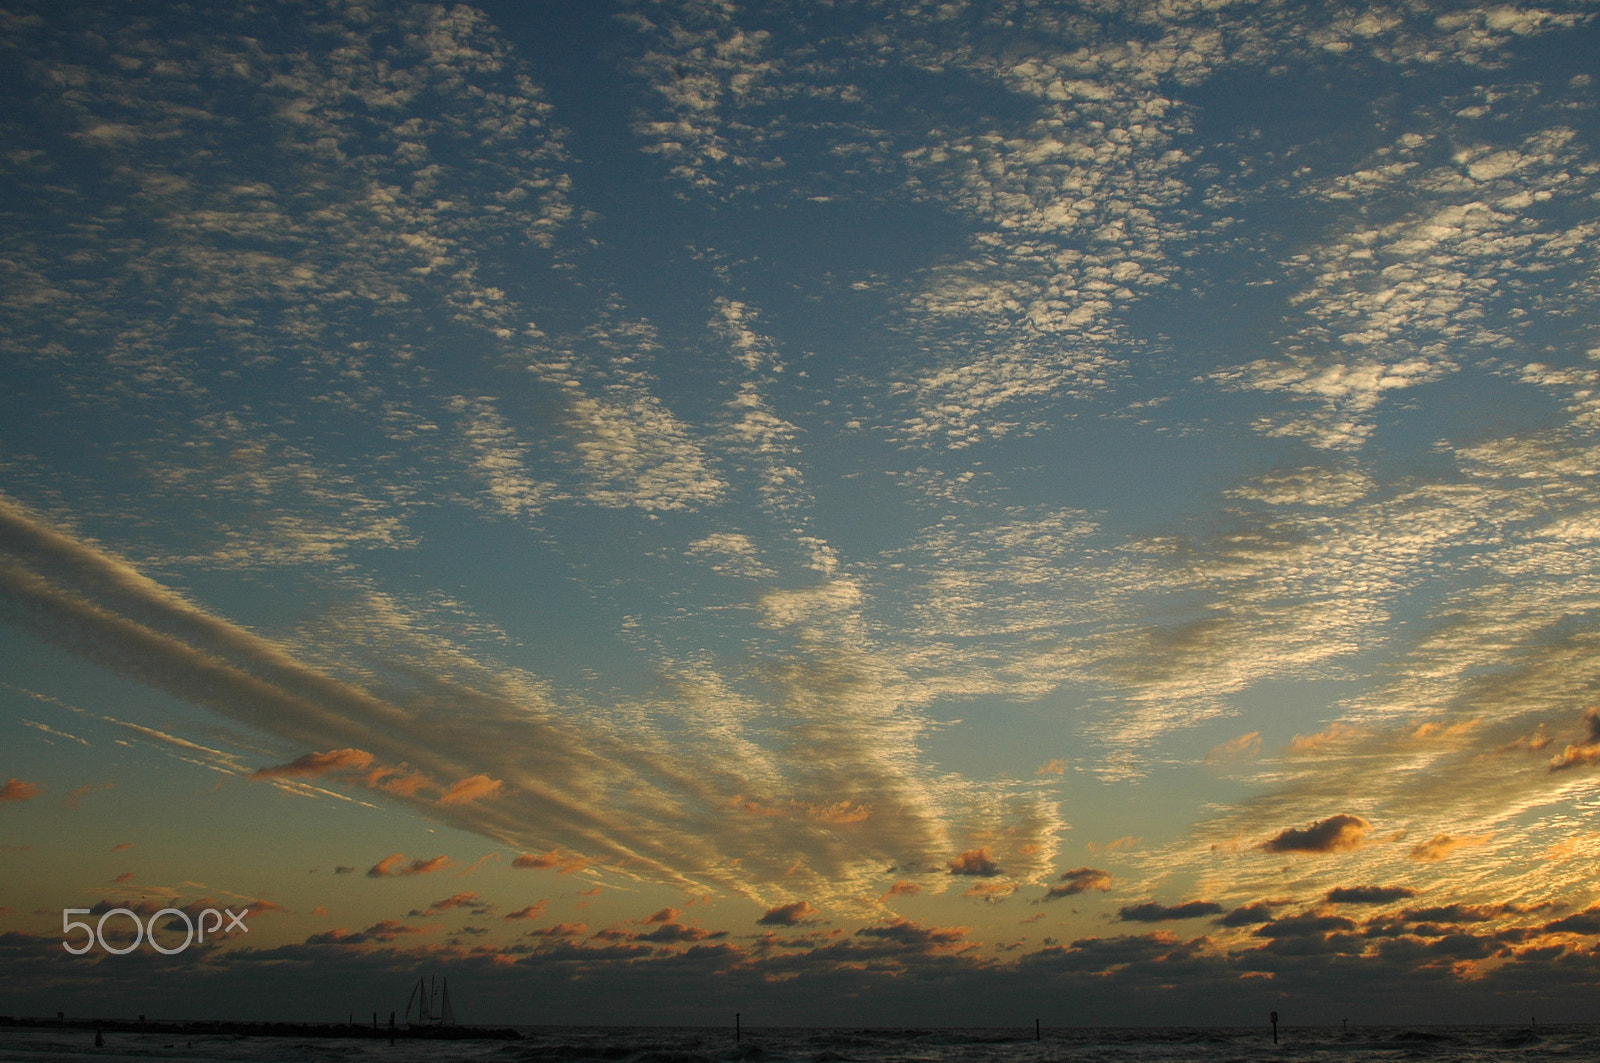 Nikon D70 sample photo. Florida sunset photography